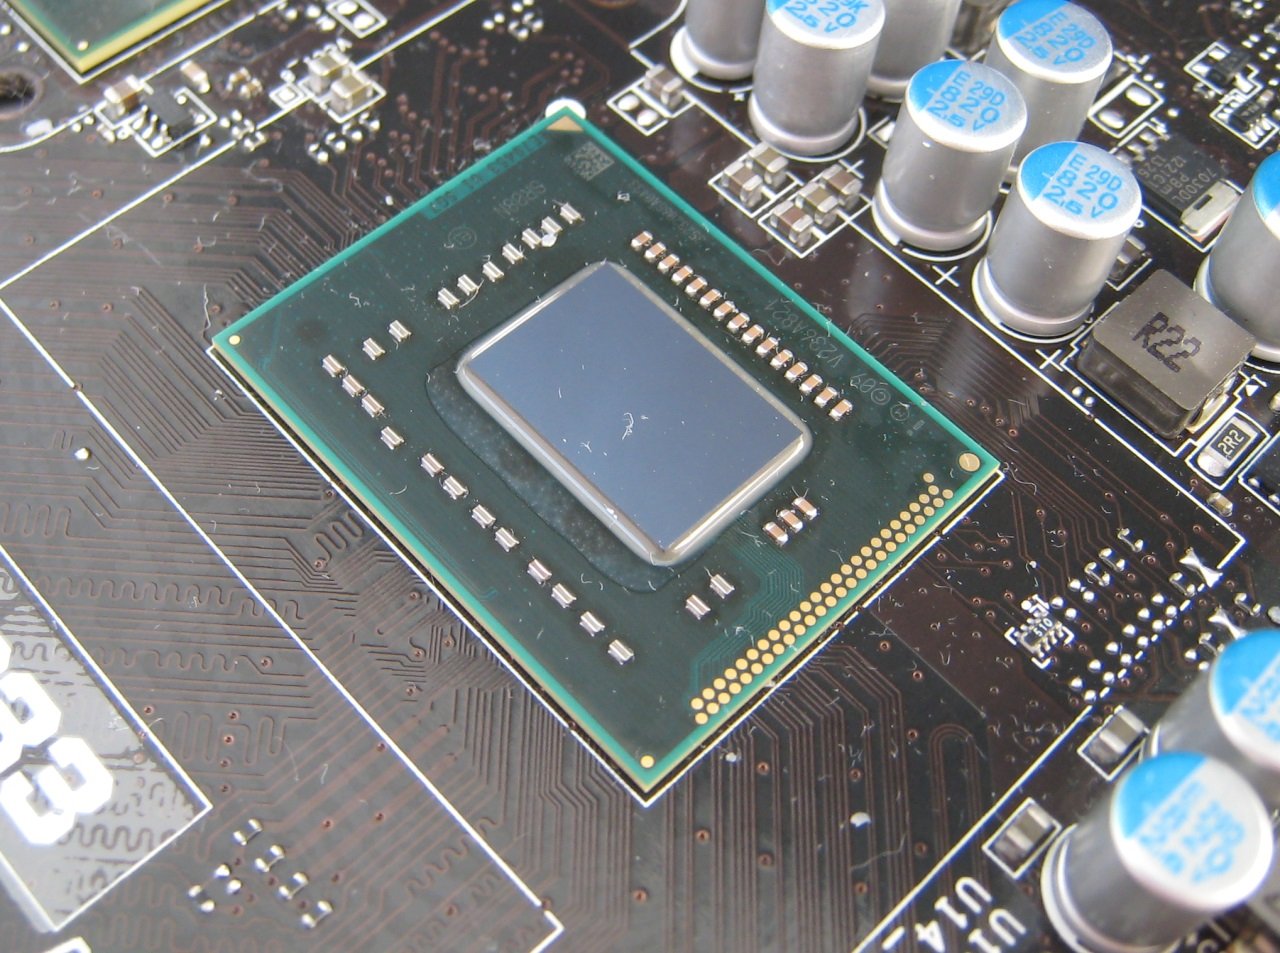 Temmen Sneeuwstorm produceren Intel Celeron 847 for Atom: MSI C847IS-P33 Mainboard Review | XBitLabs